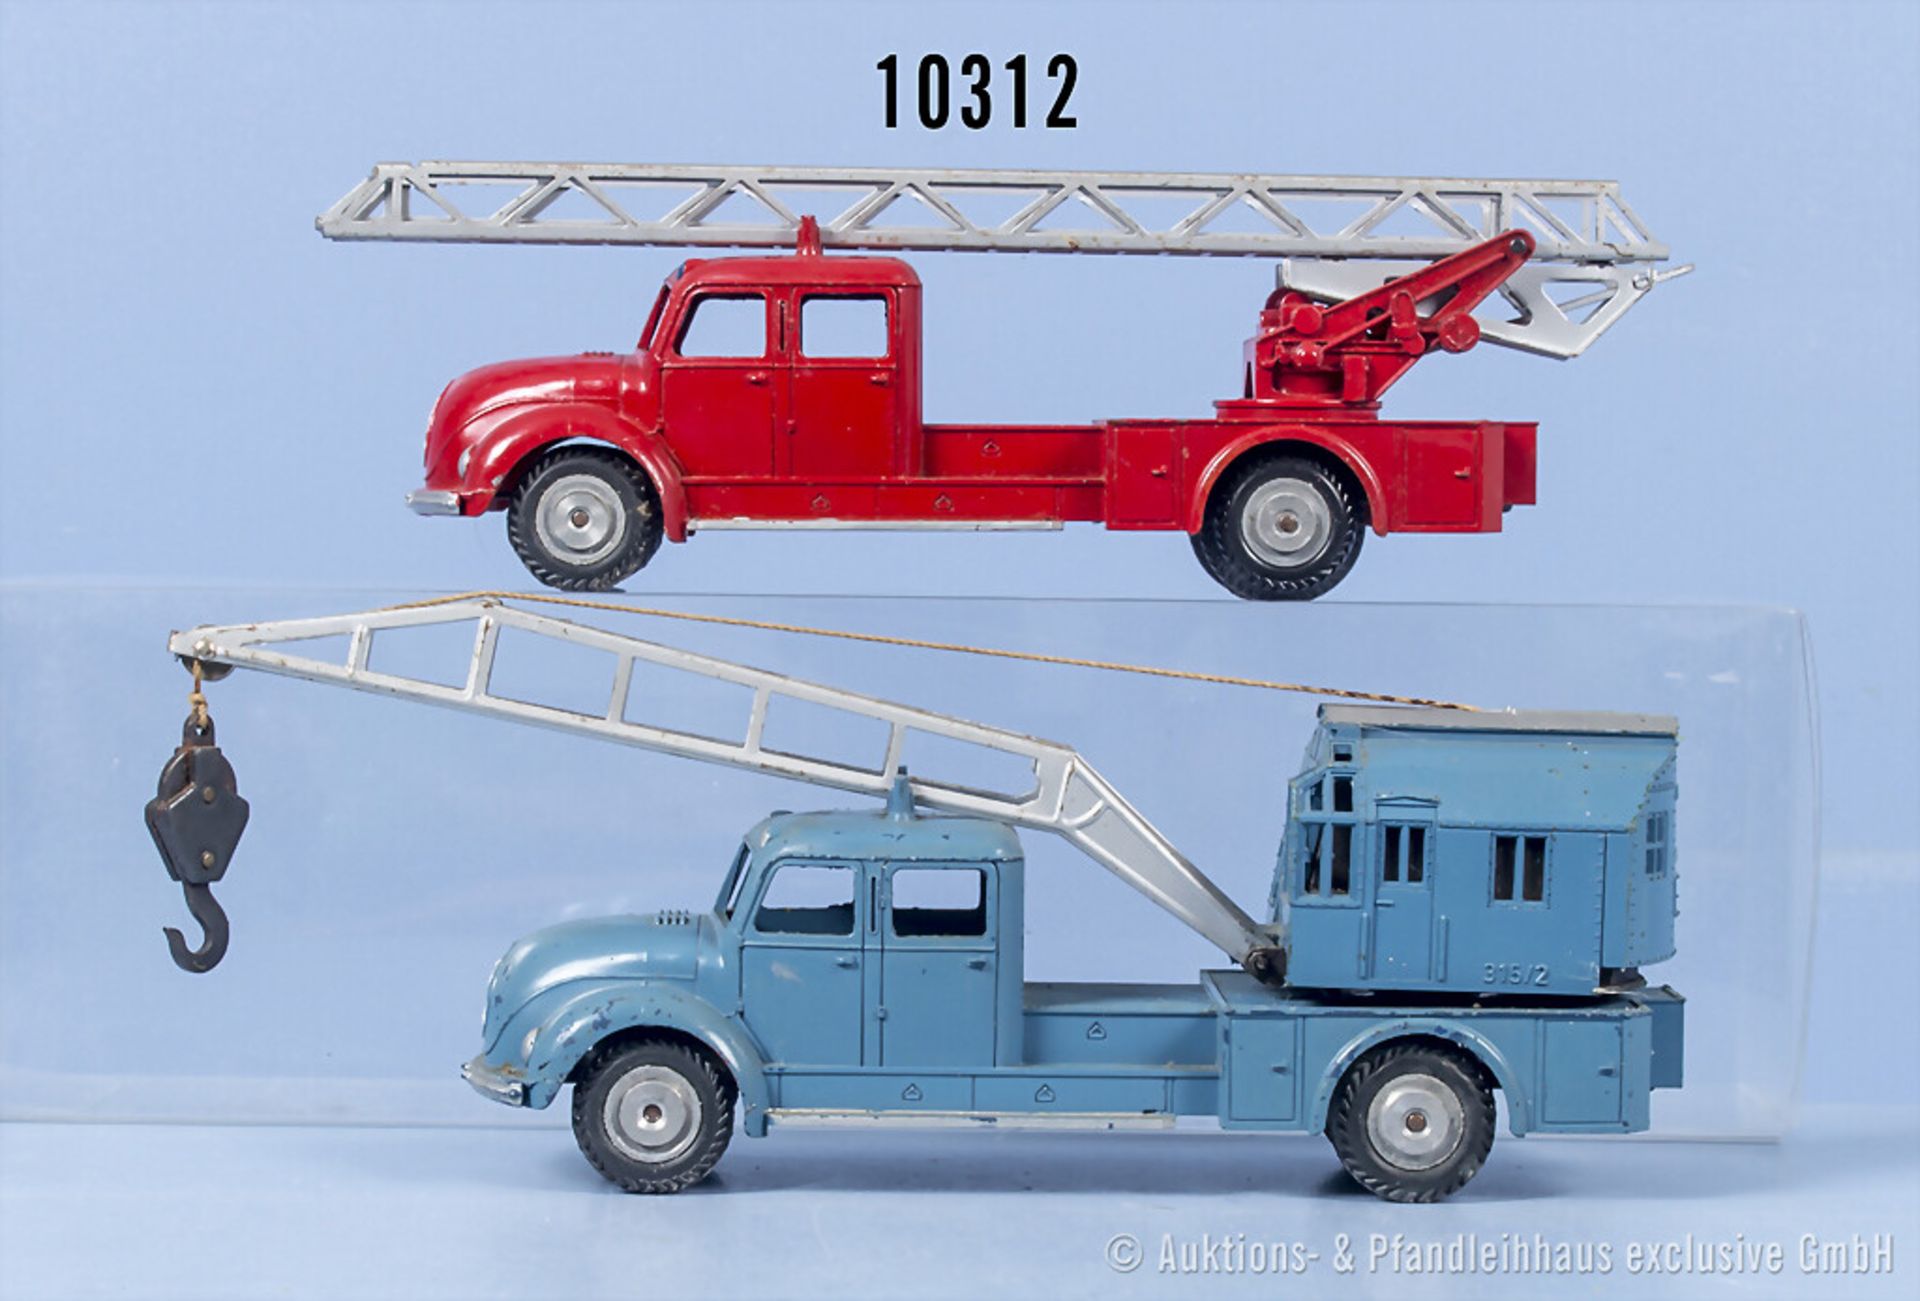 2 Märklin Modellfahrzeuge, 8031 Autokran und 8023 Magirus-Feuerwehrleiter, Metall, L ...